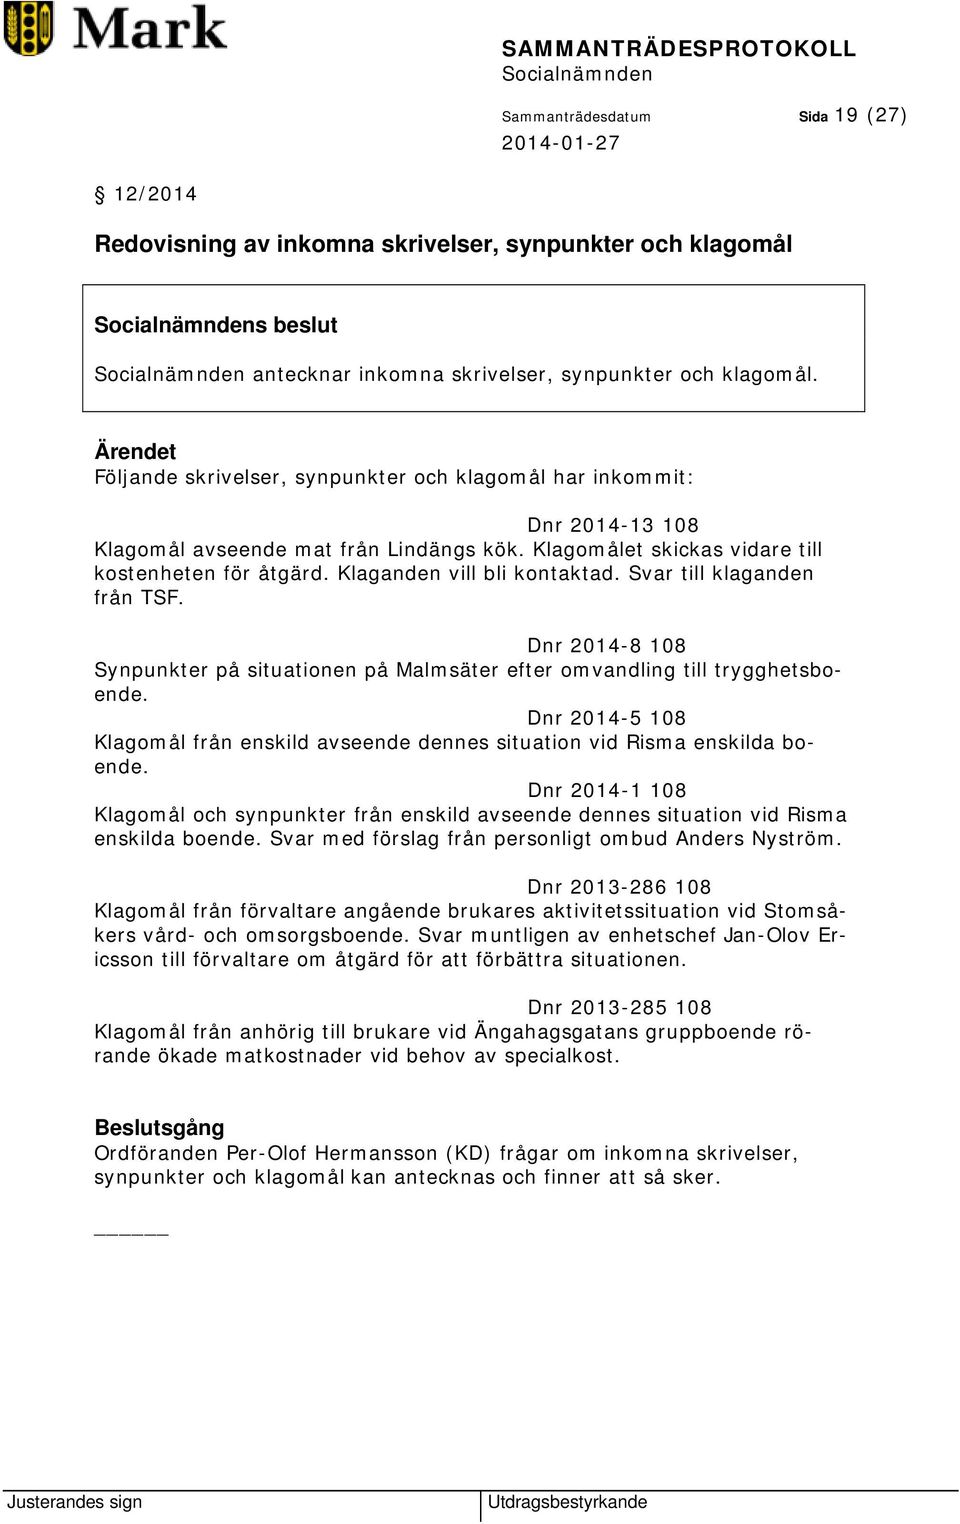 Svar till klaganden från TSF. Dnr 2014-8 108 Synpunkter på situationen på Malmsäter efter omvandling till trygghetsboende.